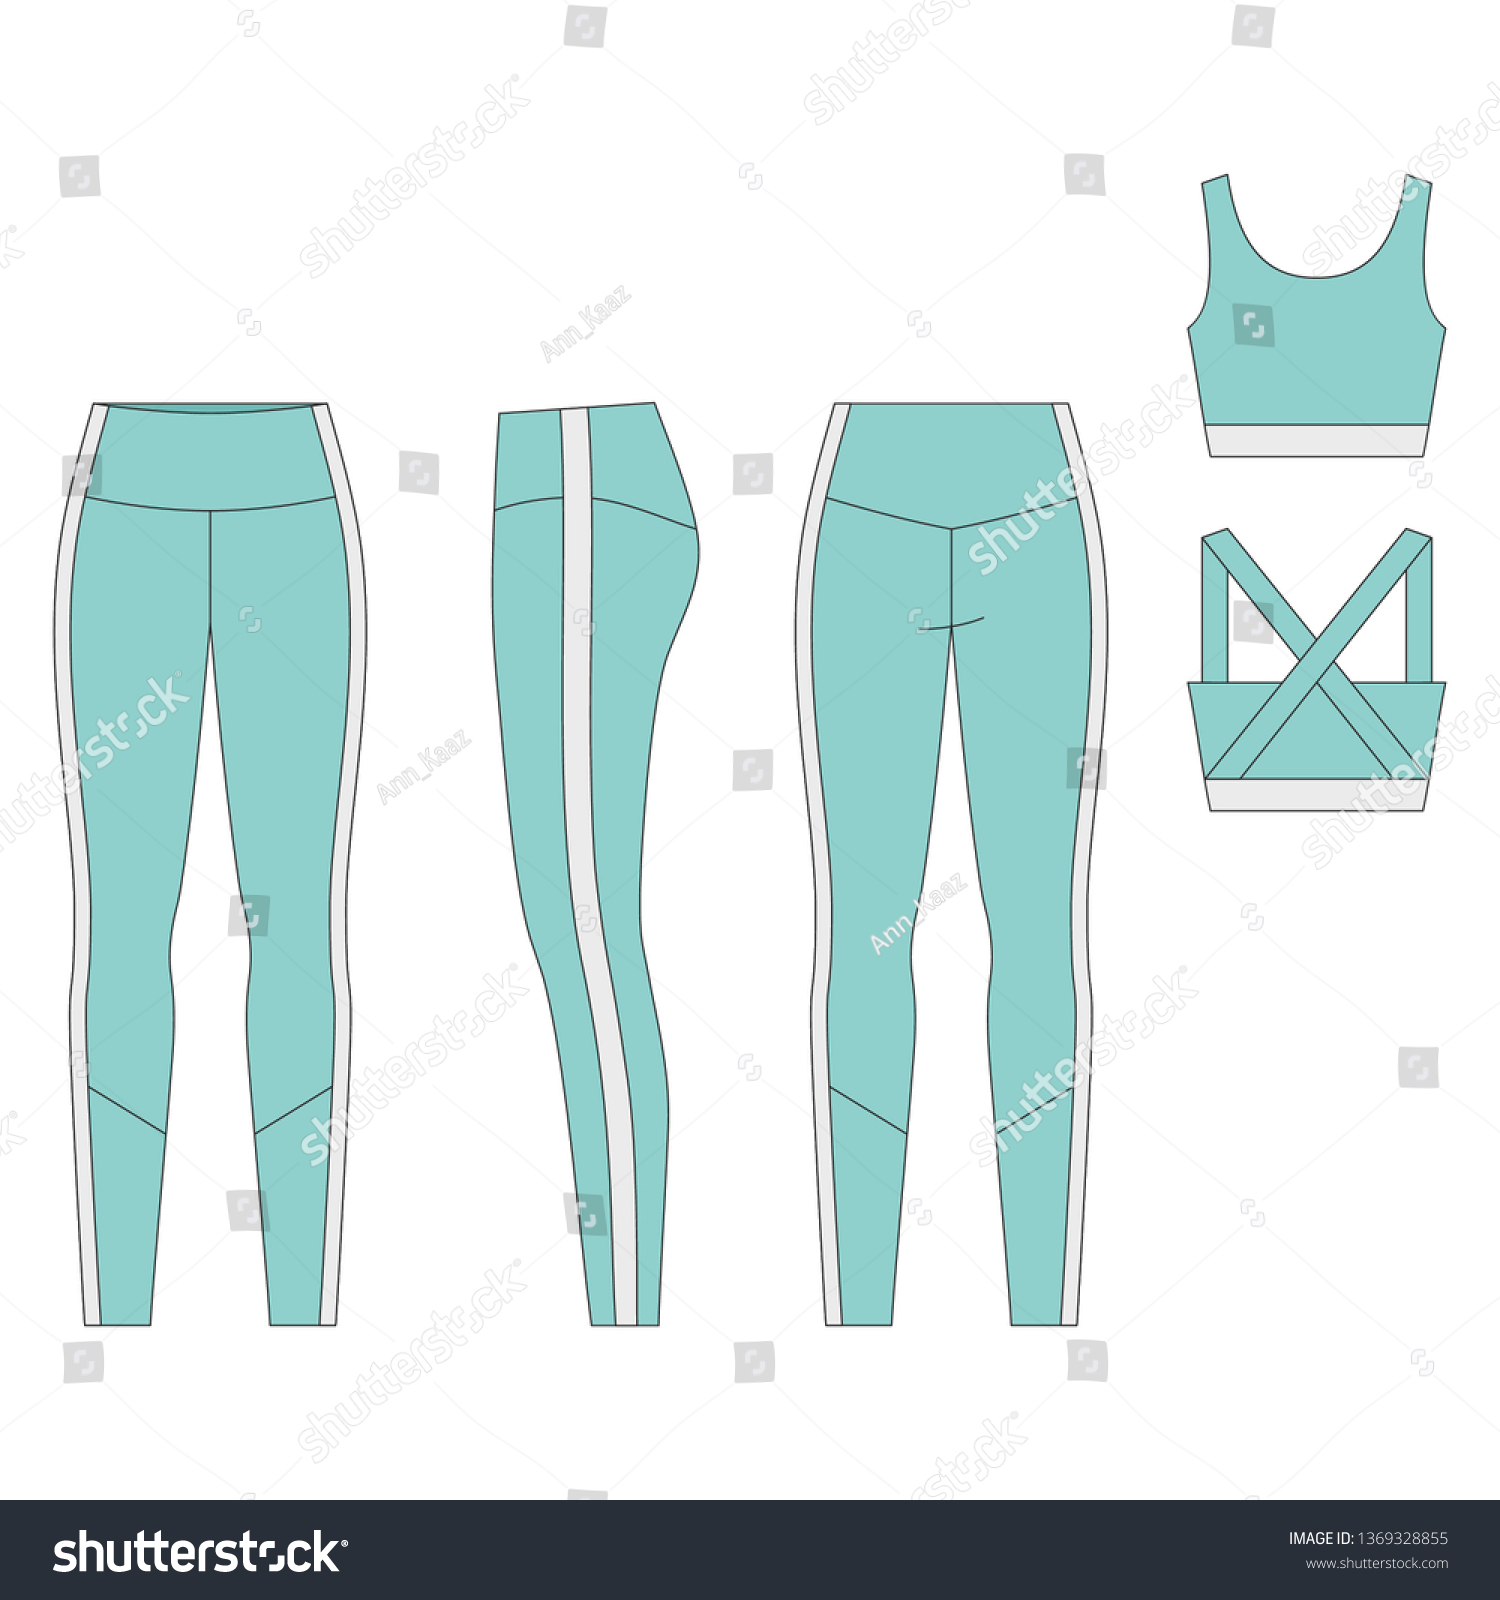 2,313 Yoga pants Stock Vectors, Images & Vector Art | Shutterstock